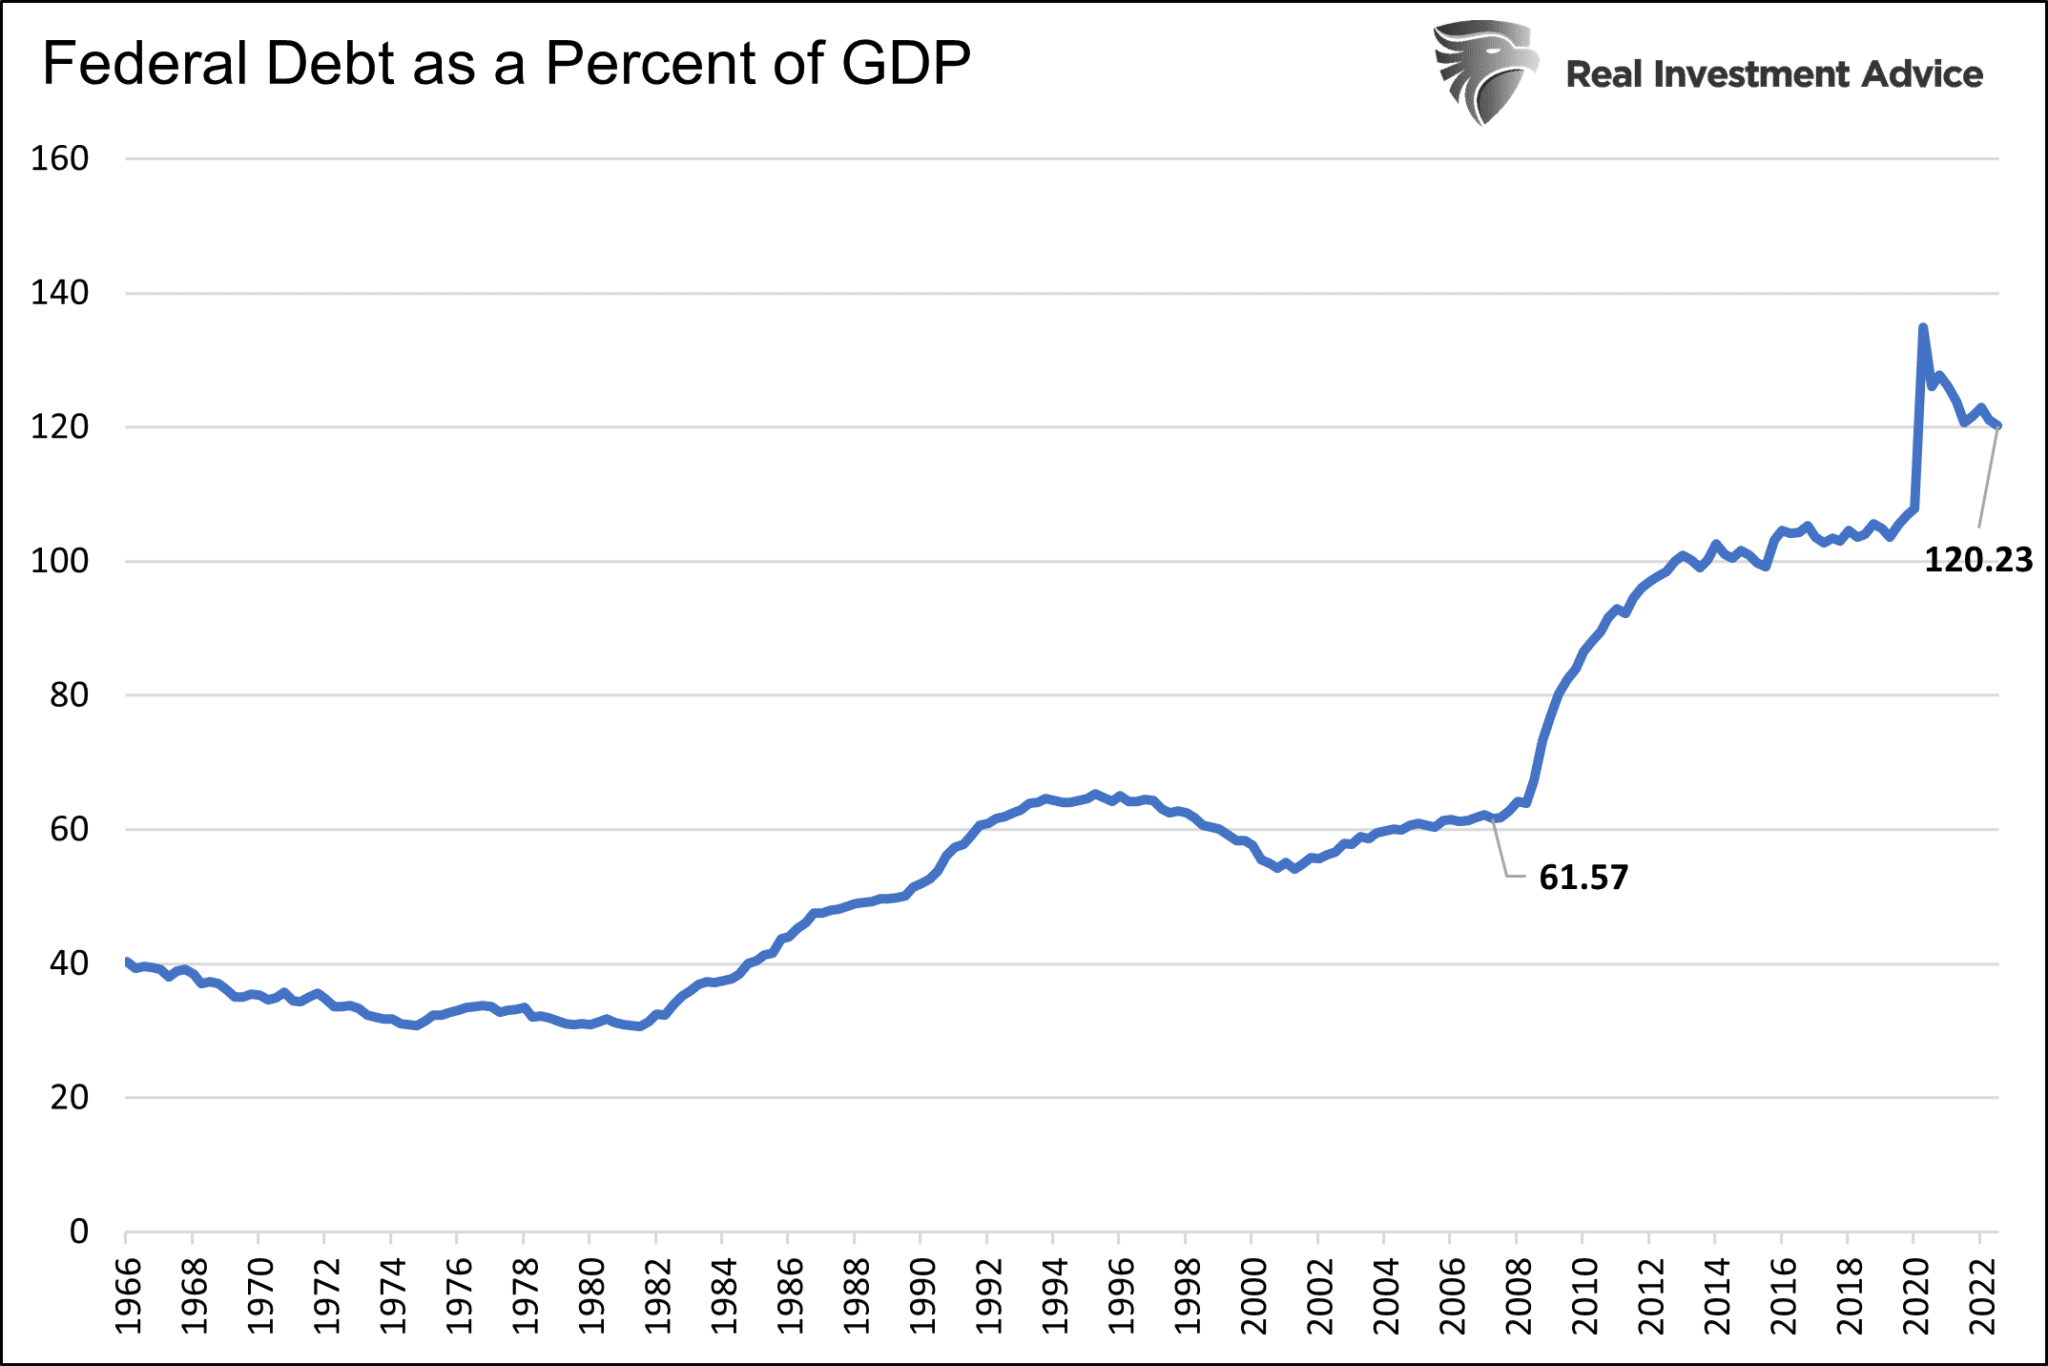 Долг федерального правительства в процентах от ВВП